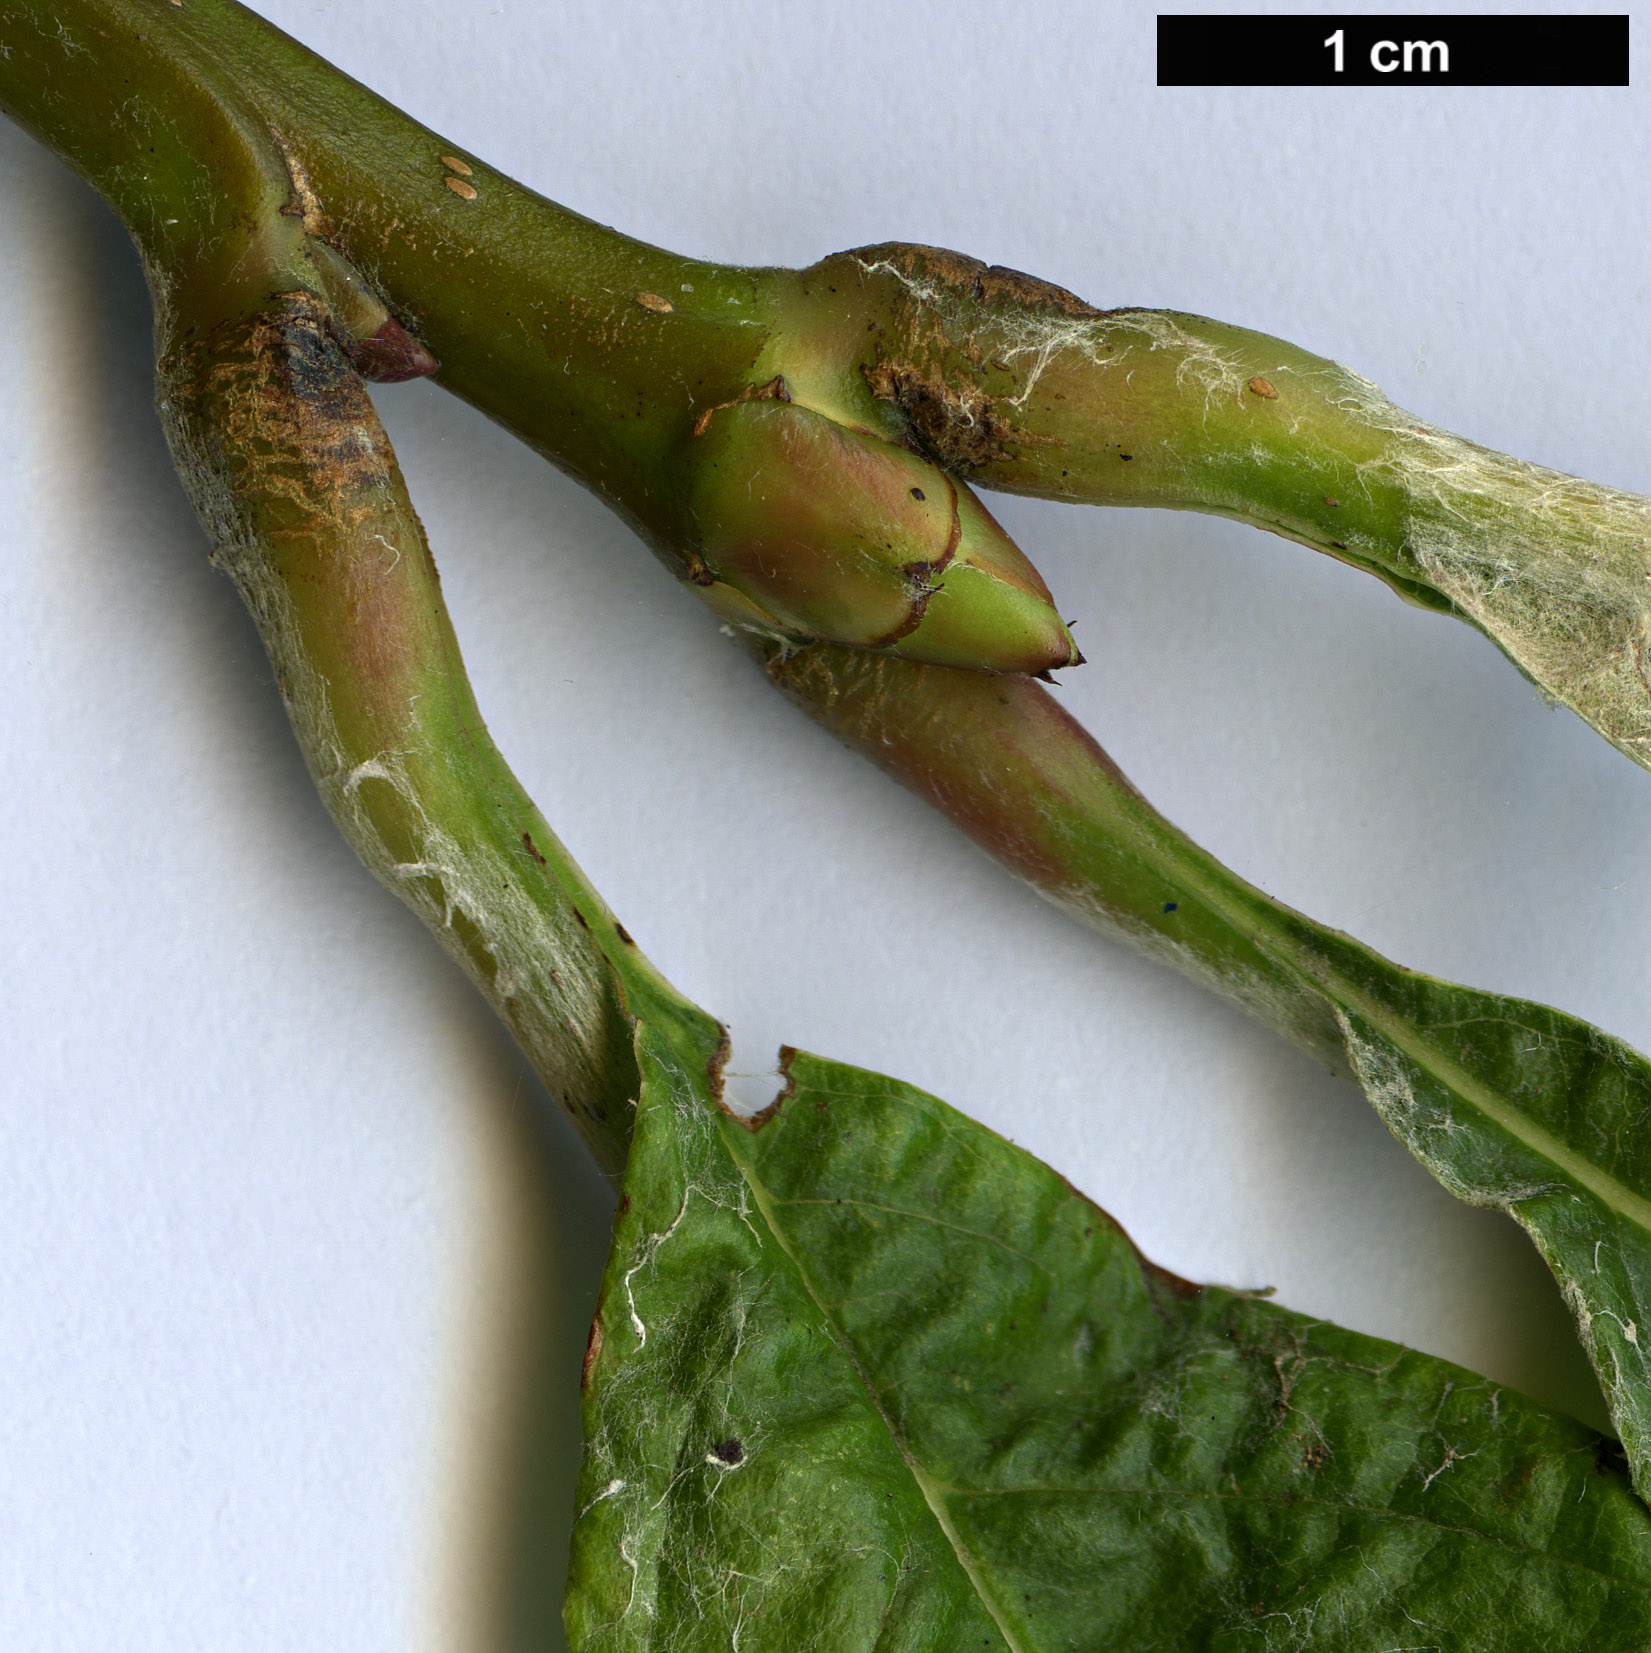 High resolution image: Family: Rosaceae - Genus: Sorbus - Taxon: vestita